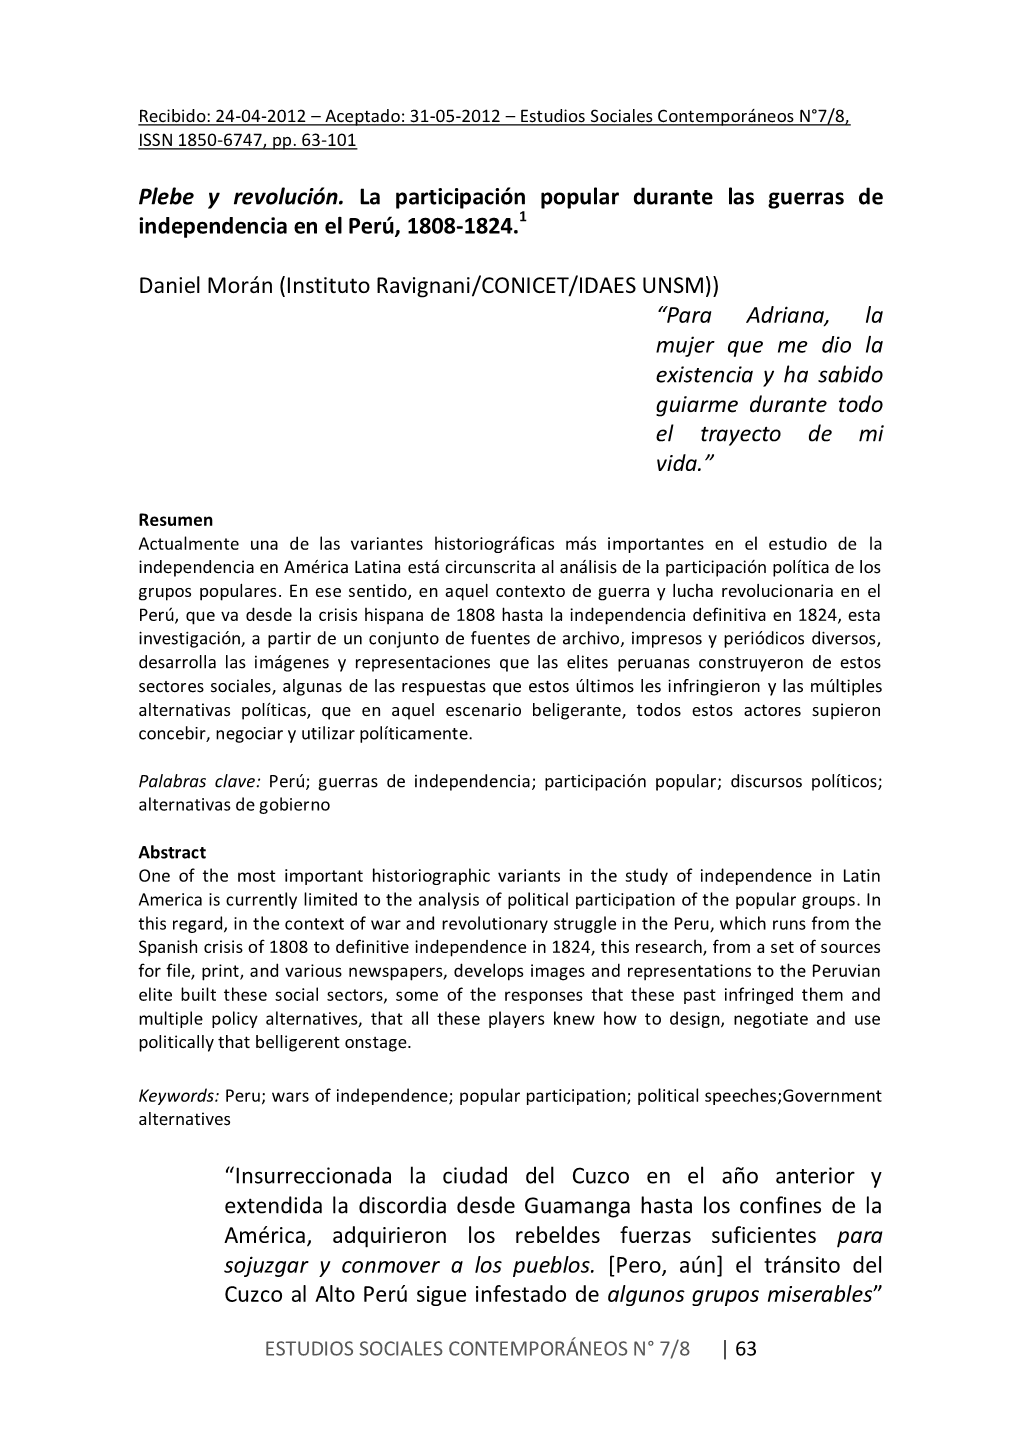 12 – Aceptado: 31-05-2012 – Estudios Sociales Contemporáneos N°7/8, ISSN 1850-6747, Pp